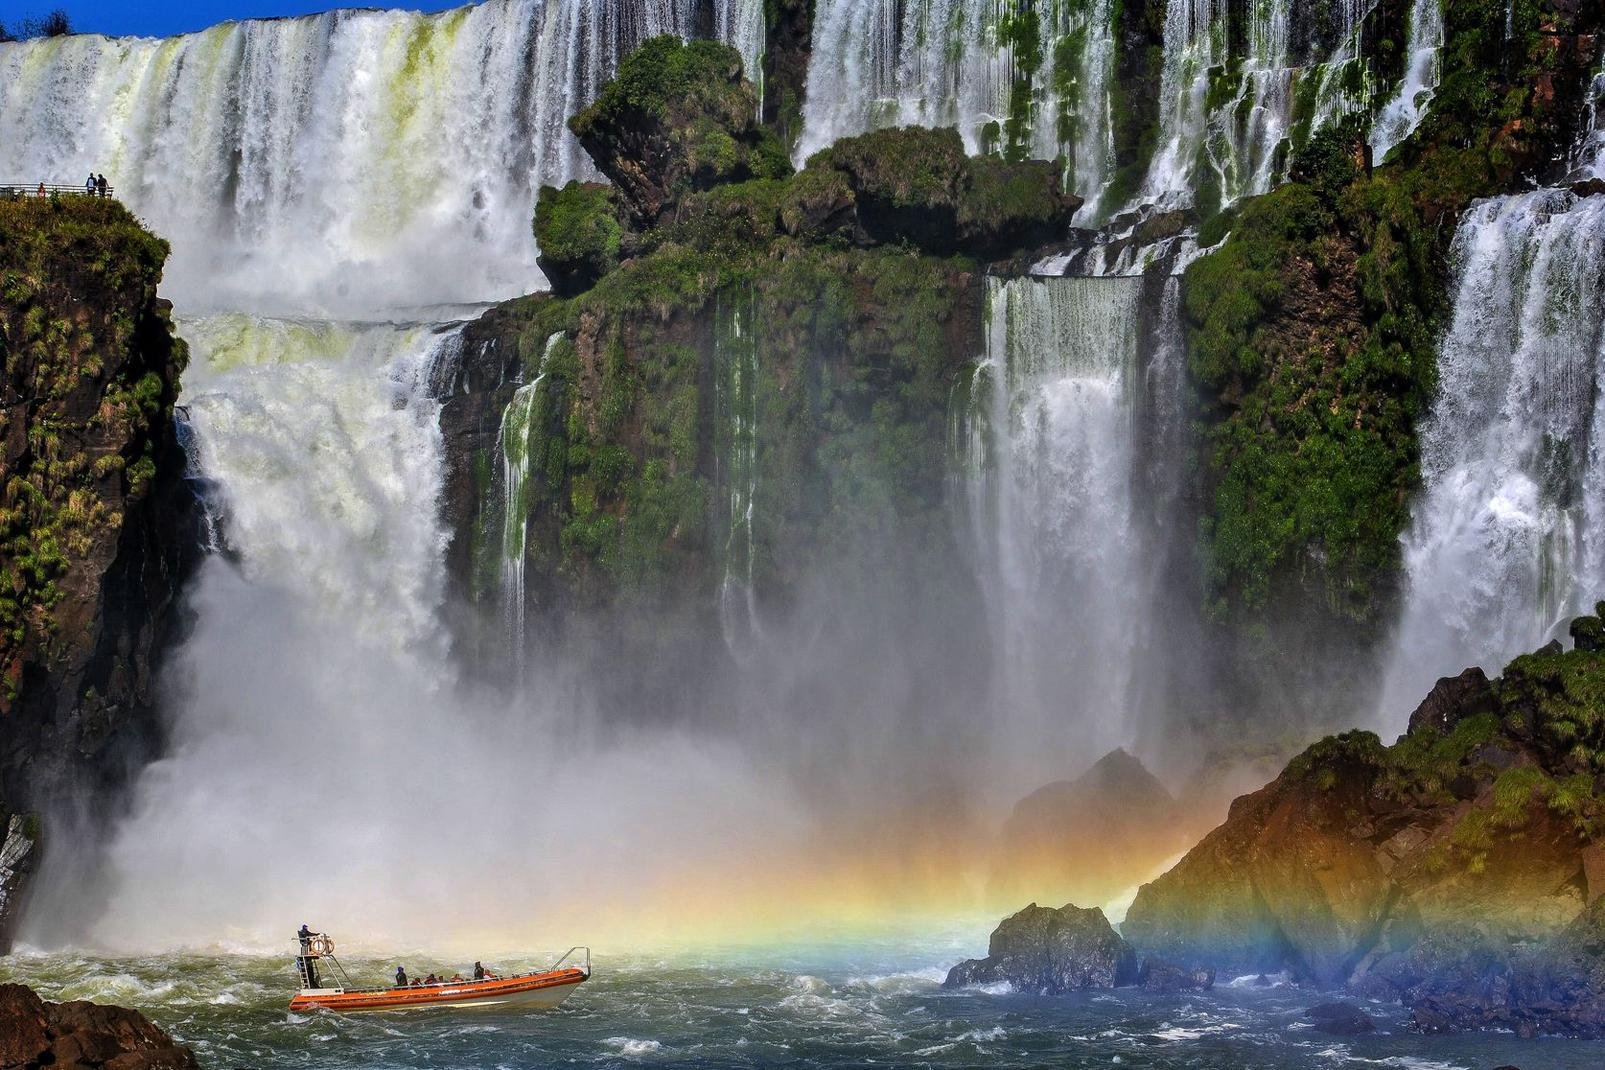 Deuxième destination du Brésil après Rio de Janeiro, situé à 1h50 de vol, Iguaçu offre l'un des paysages les plus spectaculaires de la planète. A cheval entre l'Argentine, le Paraguay et le Brésil sur un front de 3 km de long, ces impressionnantes cataractes se situent aux confins du Brésil, dans le sud-ouest du pays. Quand on parle des chutes d'Iguaçu, on évoque une centaines de cascades ! Pas étonnant ...